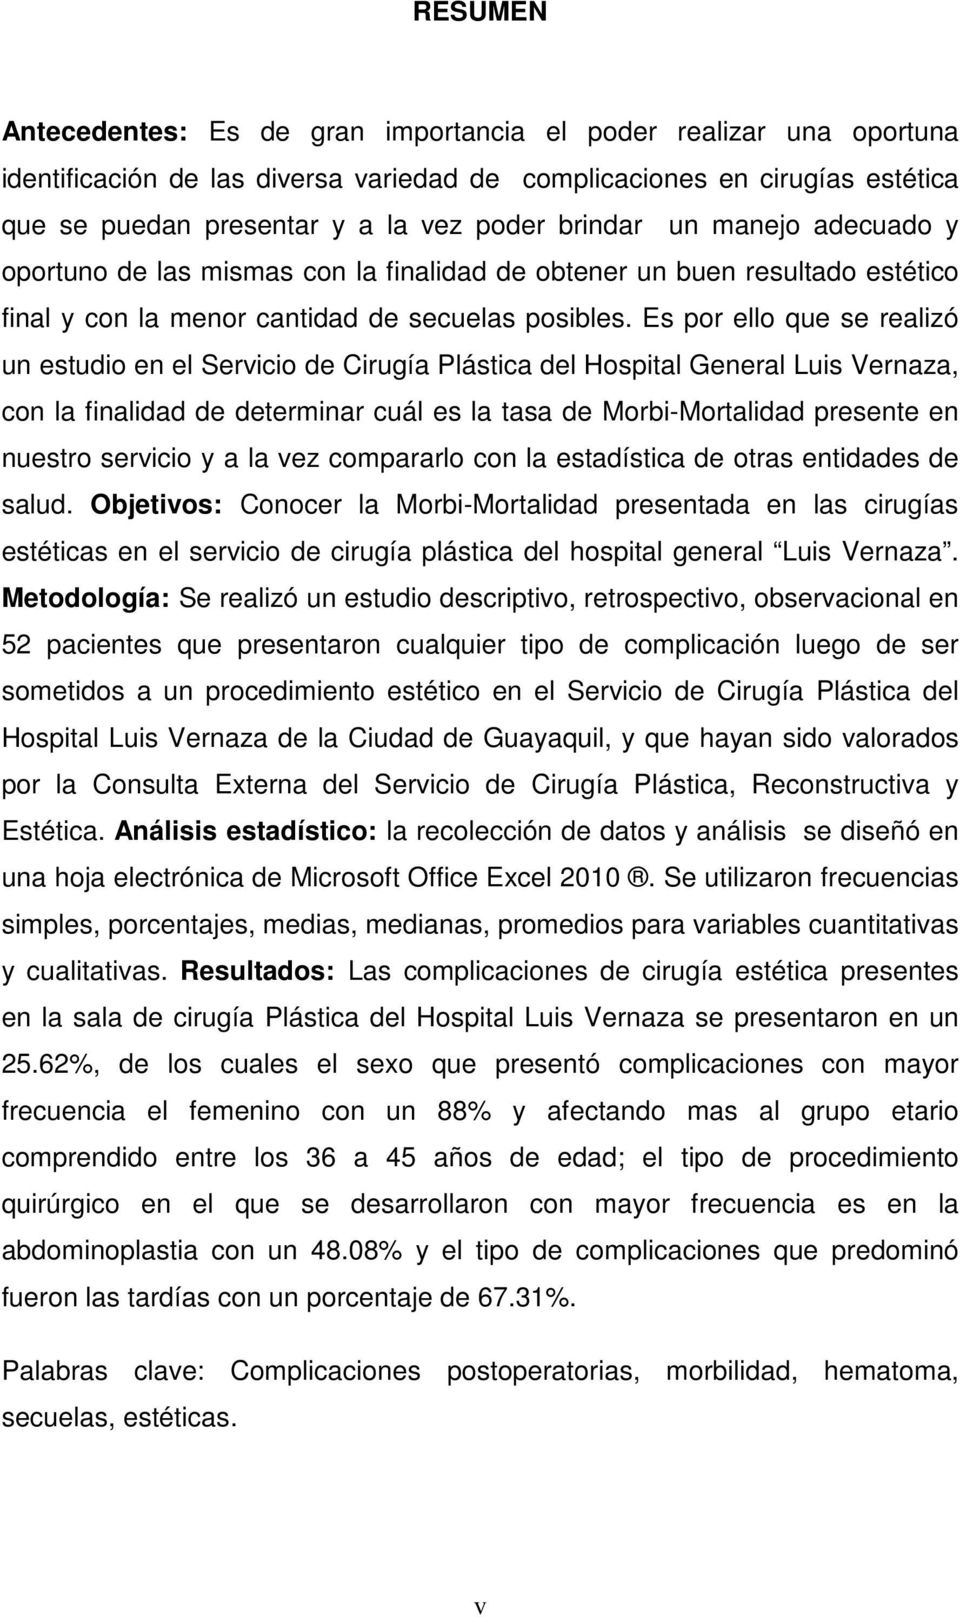 Es por ello que se realizó un estudio en el Servicio de Cirugía Plástica del Hospital General Luis Vernaza, con la finalidad de determinar cuál es la tasa de Morbi-Mortalidad presente en nuestro